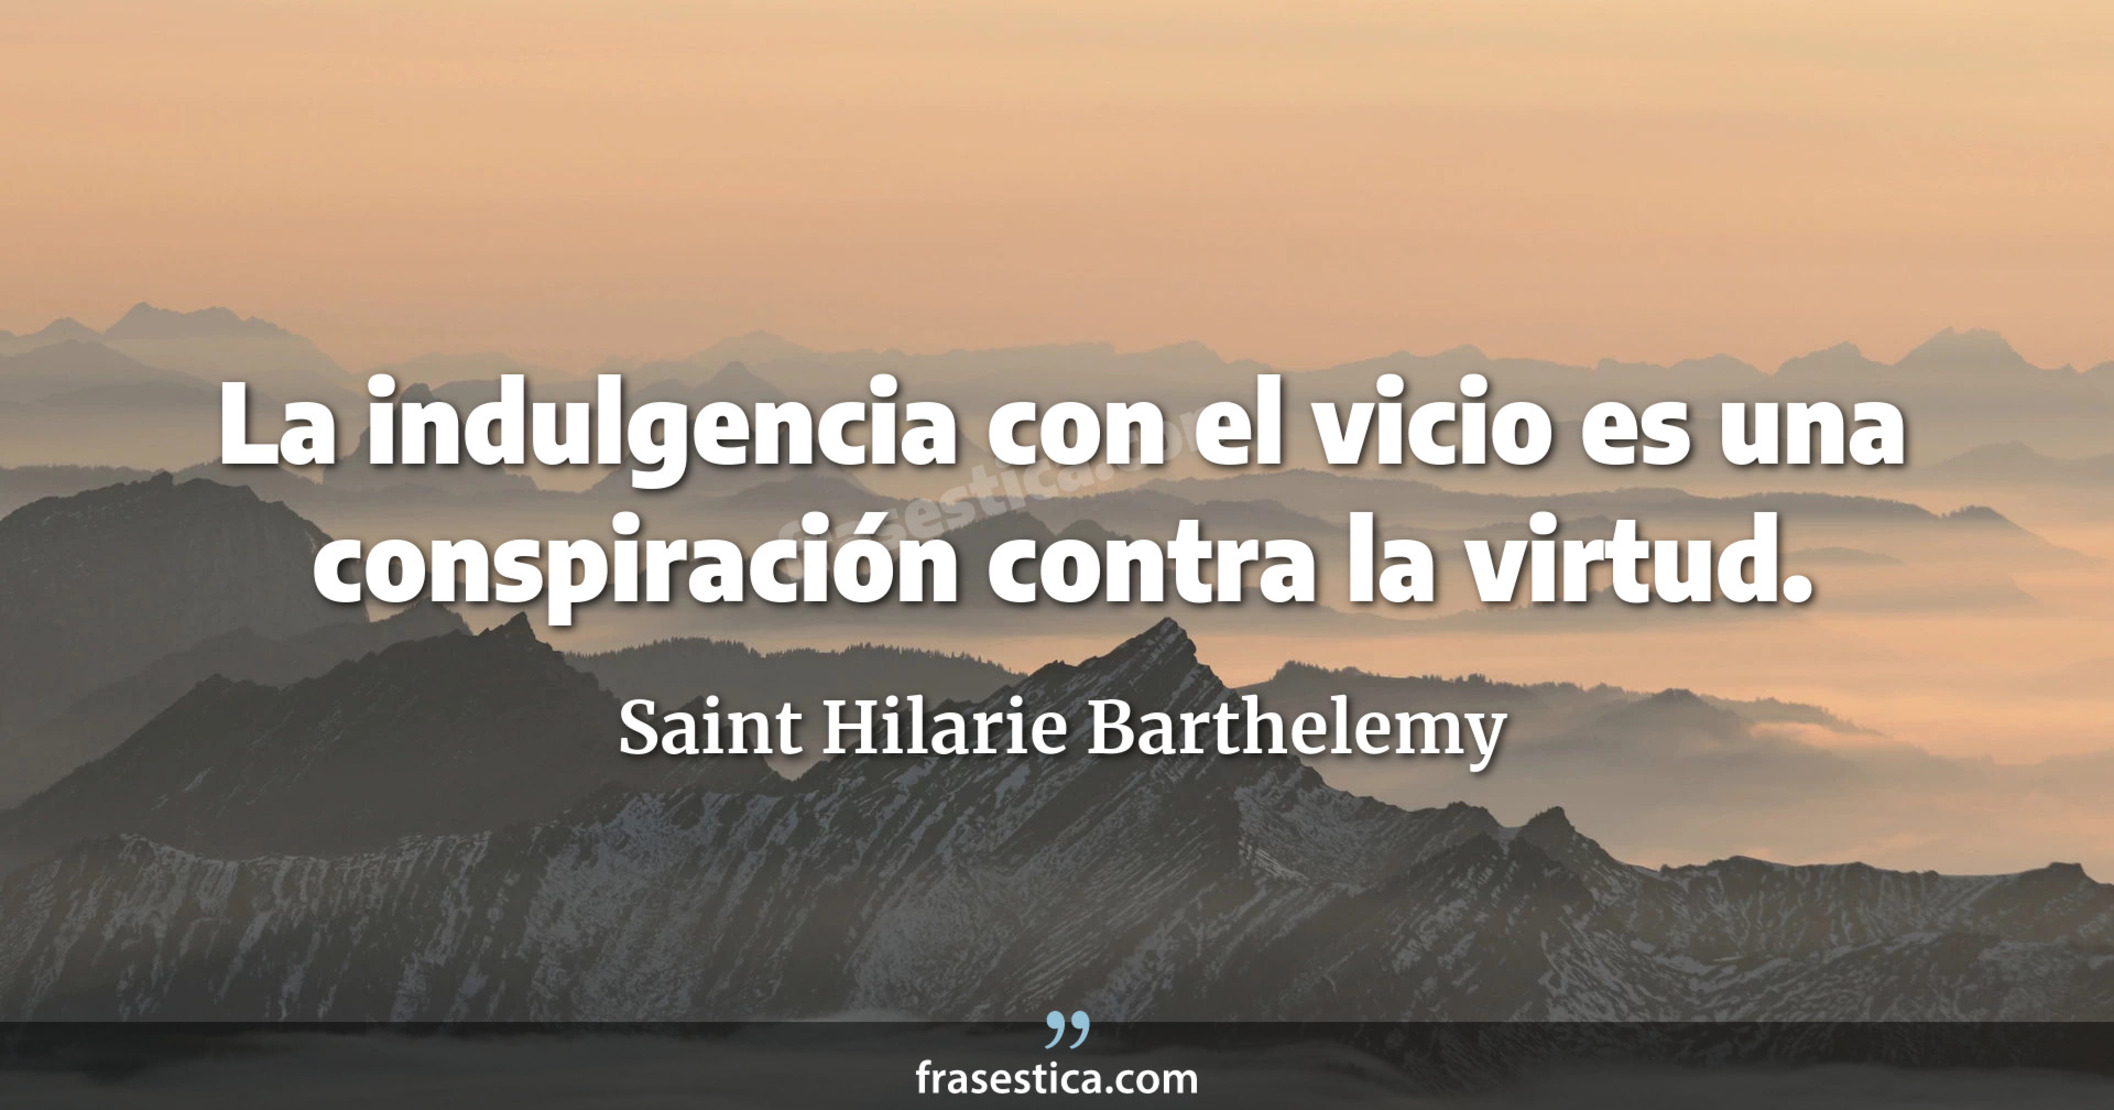 La indulgencia con el vicio es una conspiración contra la virtud. - Saint Hilarie Barthelemy